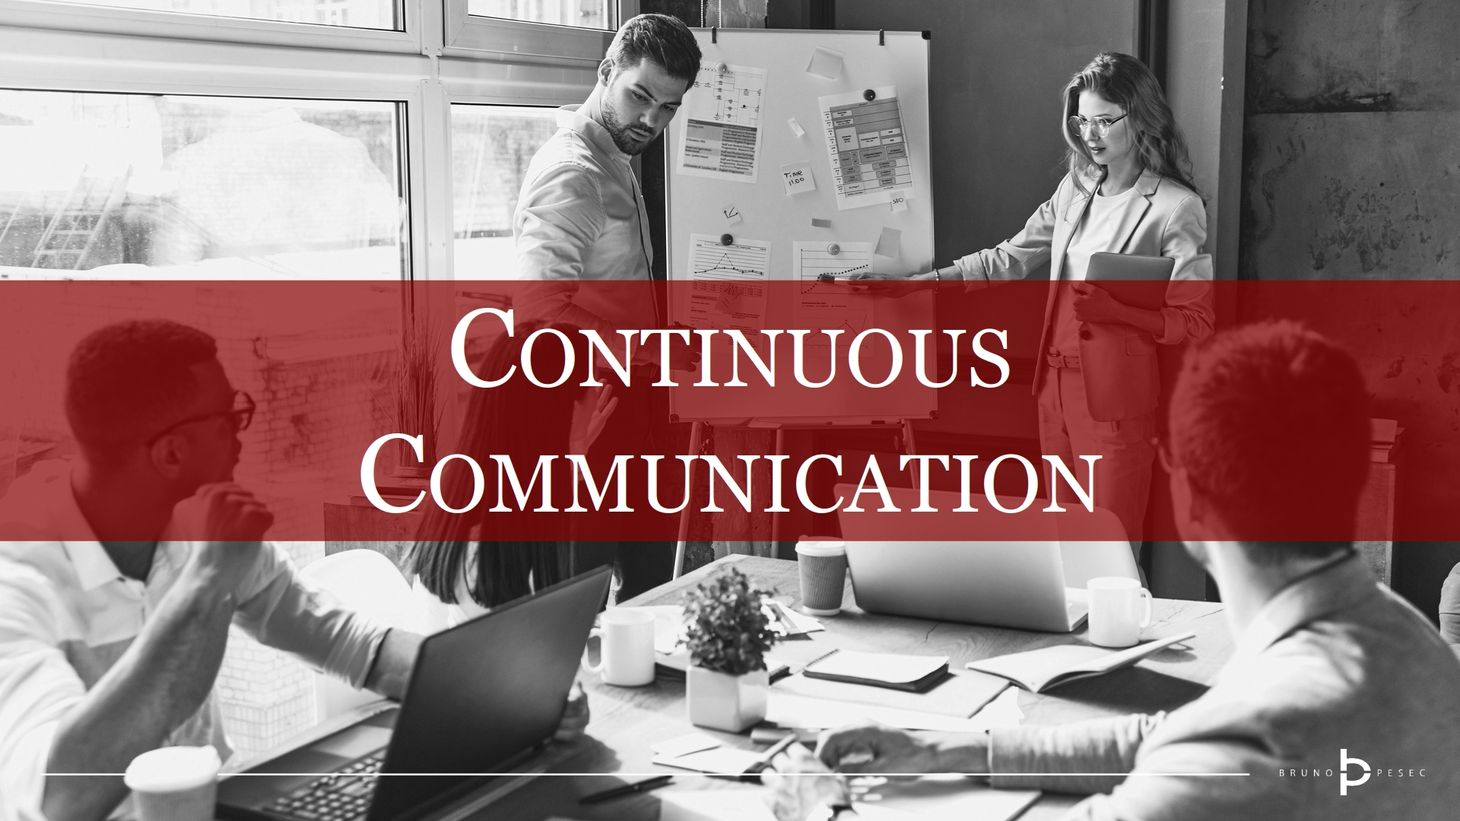 Continuous communication